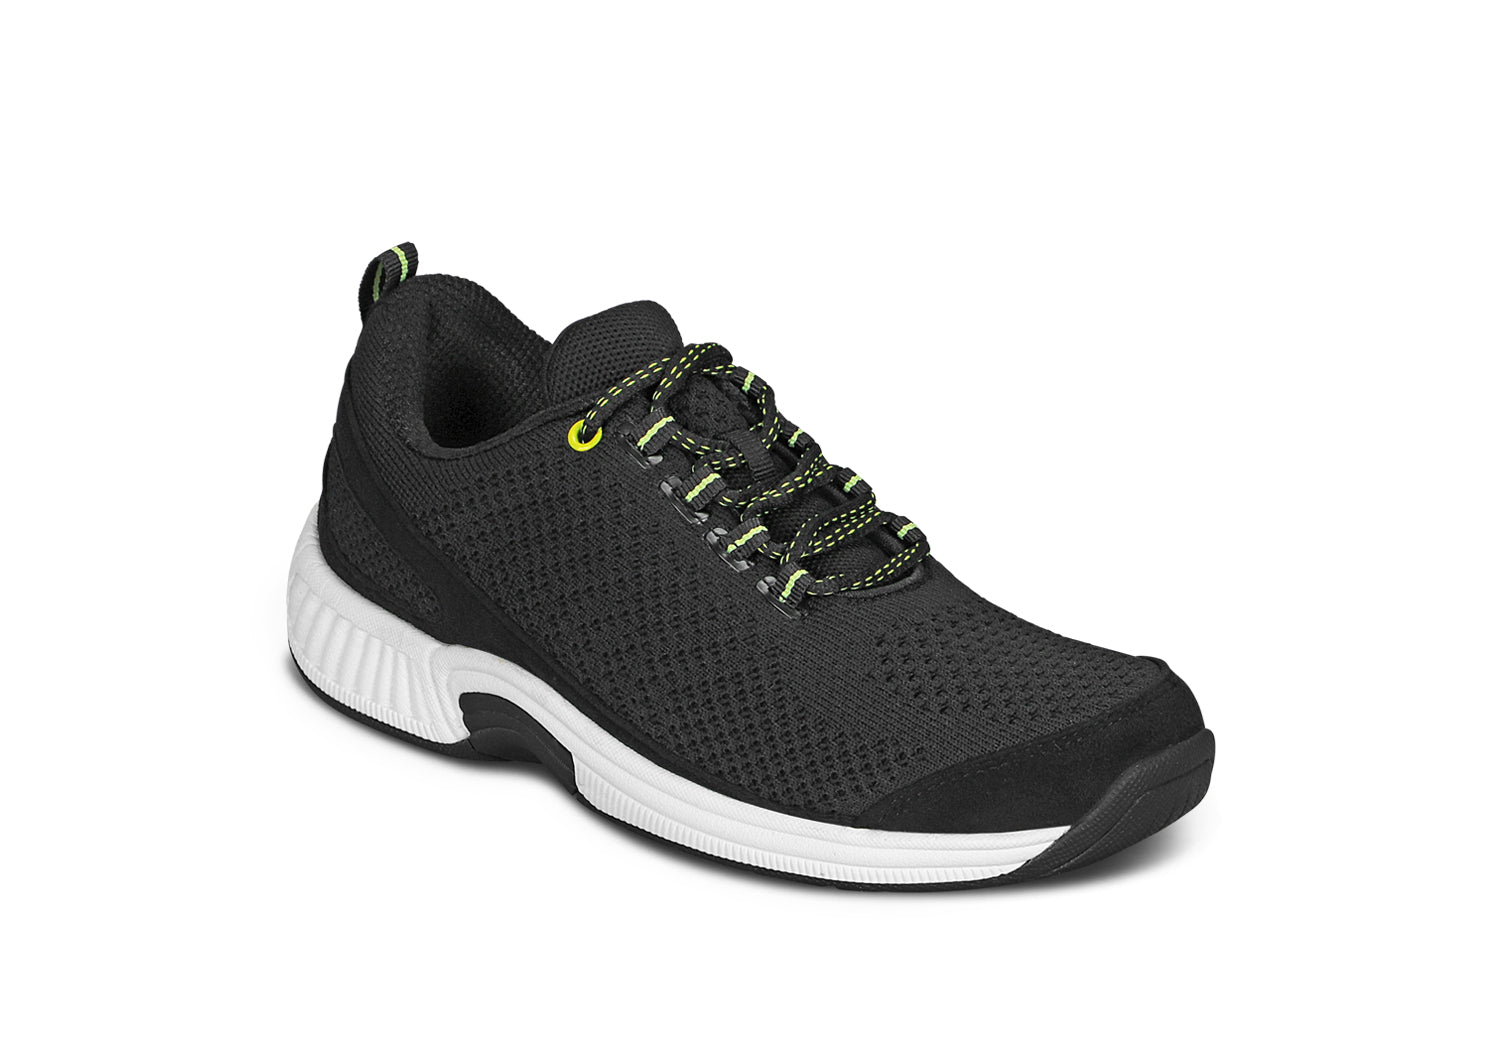 Ergonomic Stretch Comfort Shoes – The OrthoFit - Premium